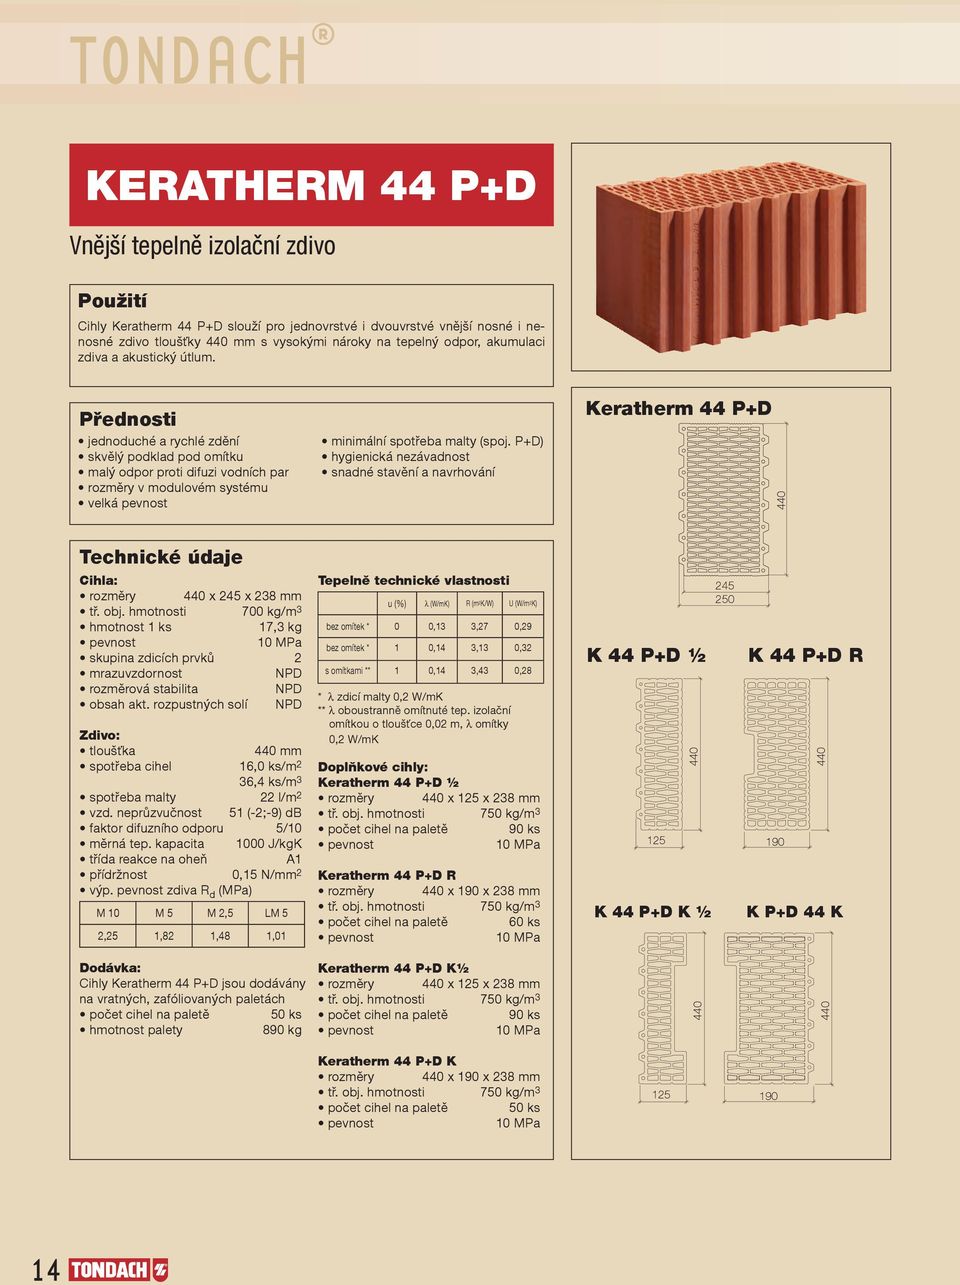 P+D) hygienická nezávadnost snadné stavění a navrhování Keratherm 44 P+D Cihla: rozměry x 245 x 238 mm tř. obj.